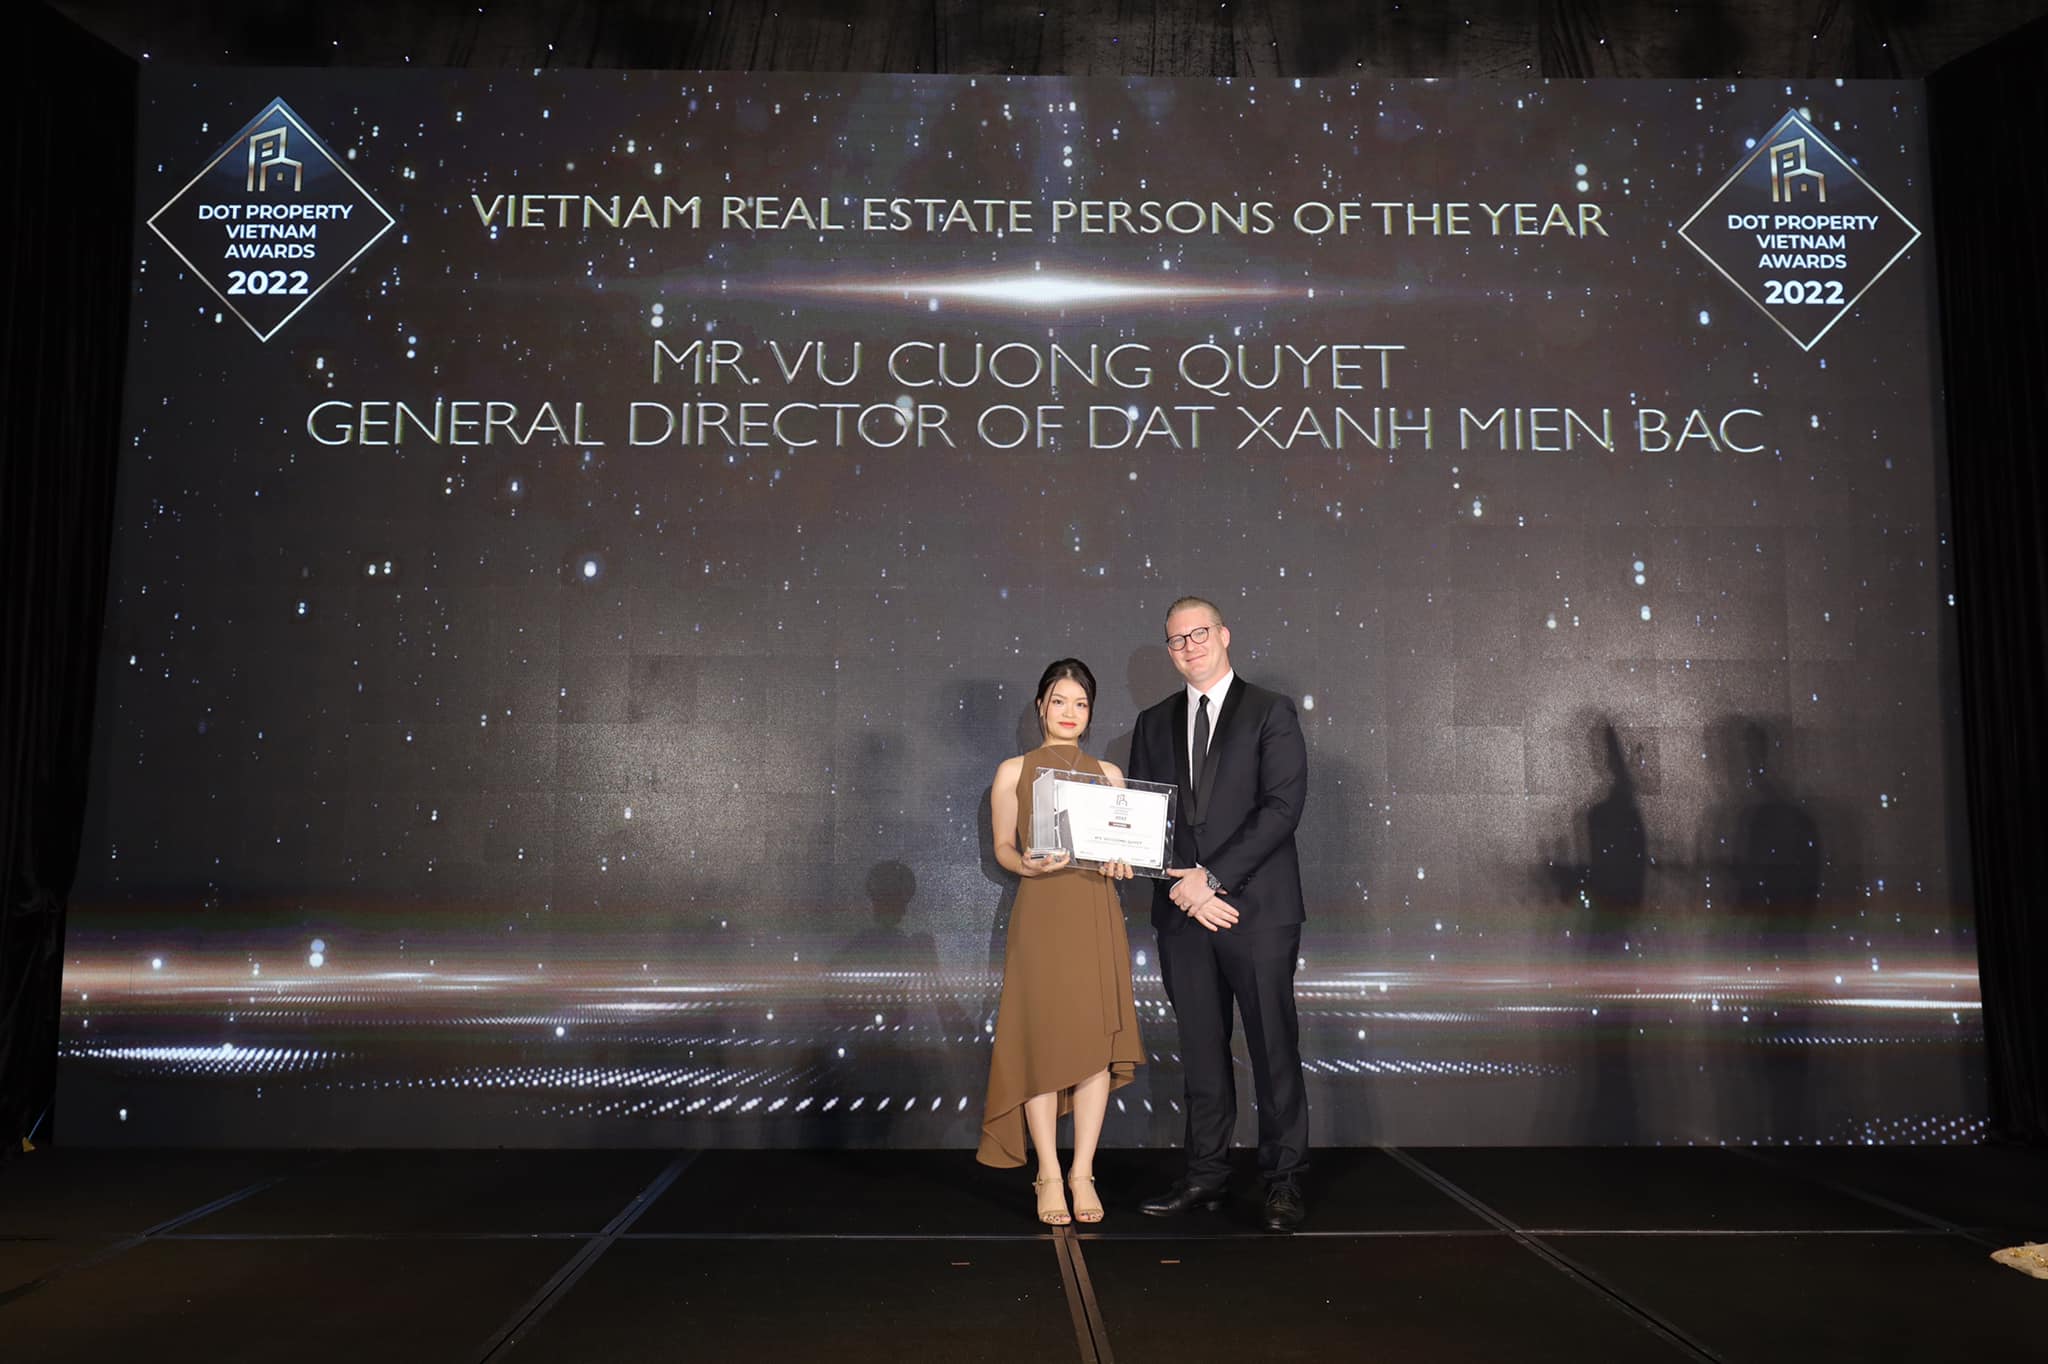 Đất Xanh Miền Bắc nhận 2 giải thưởng từ Dot Property Vietnam Awards 2022